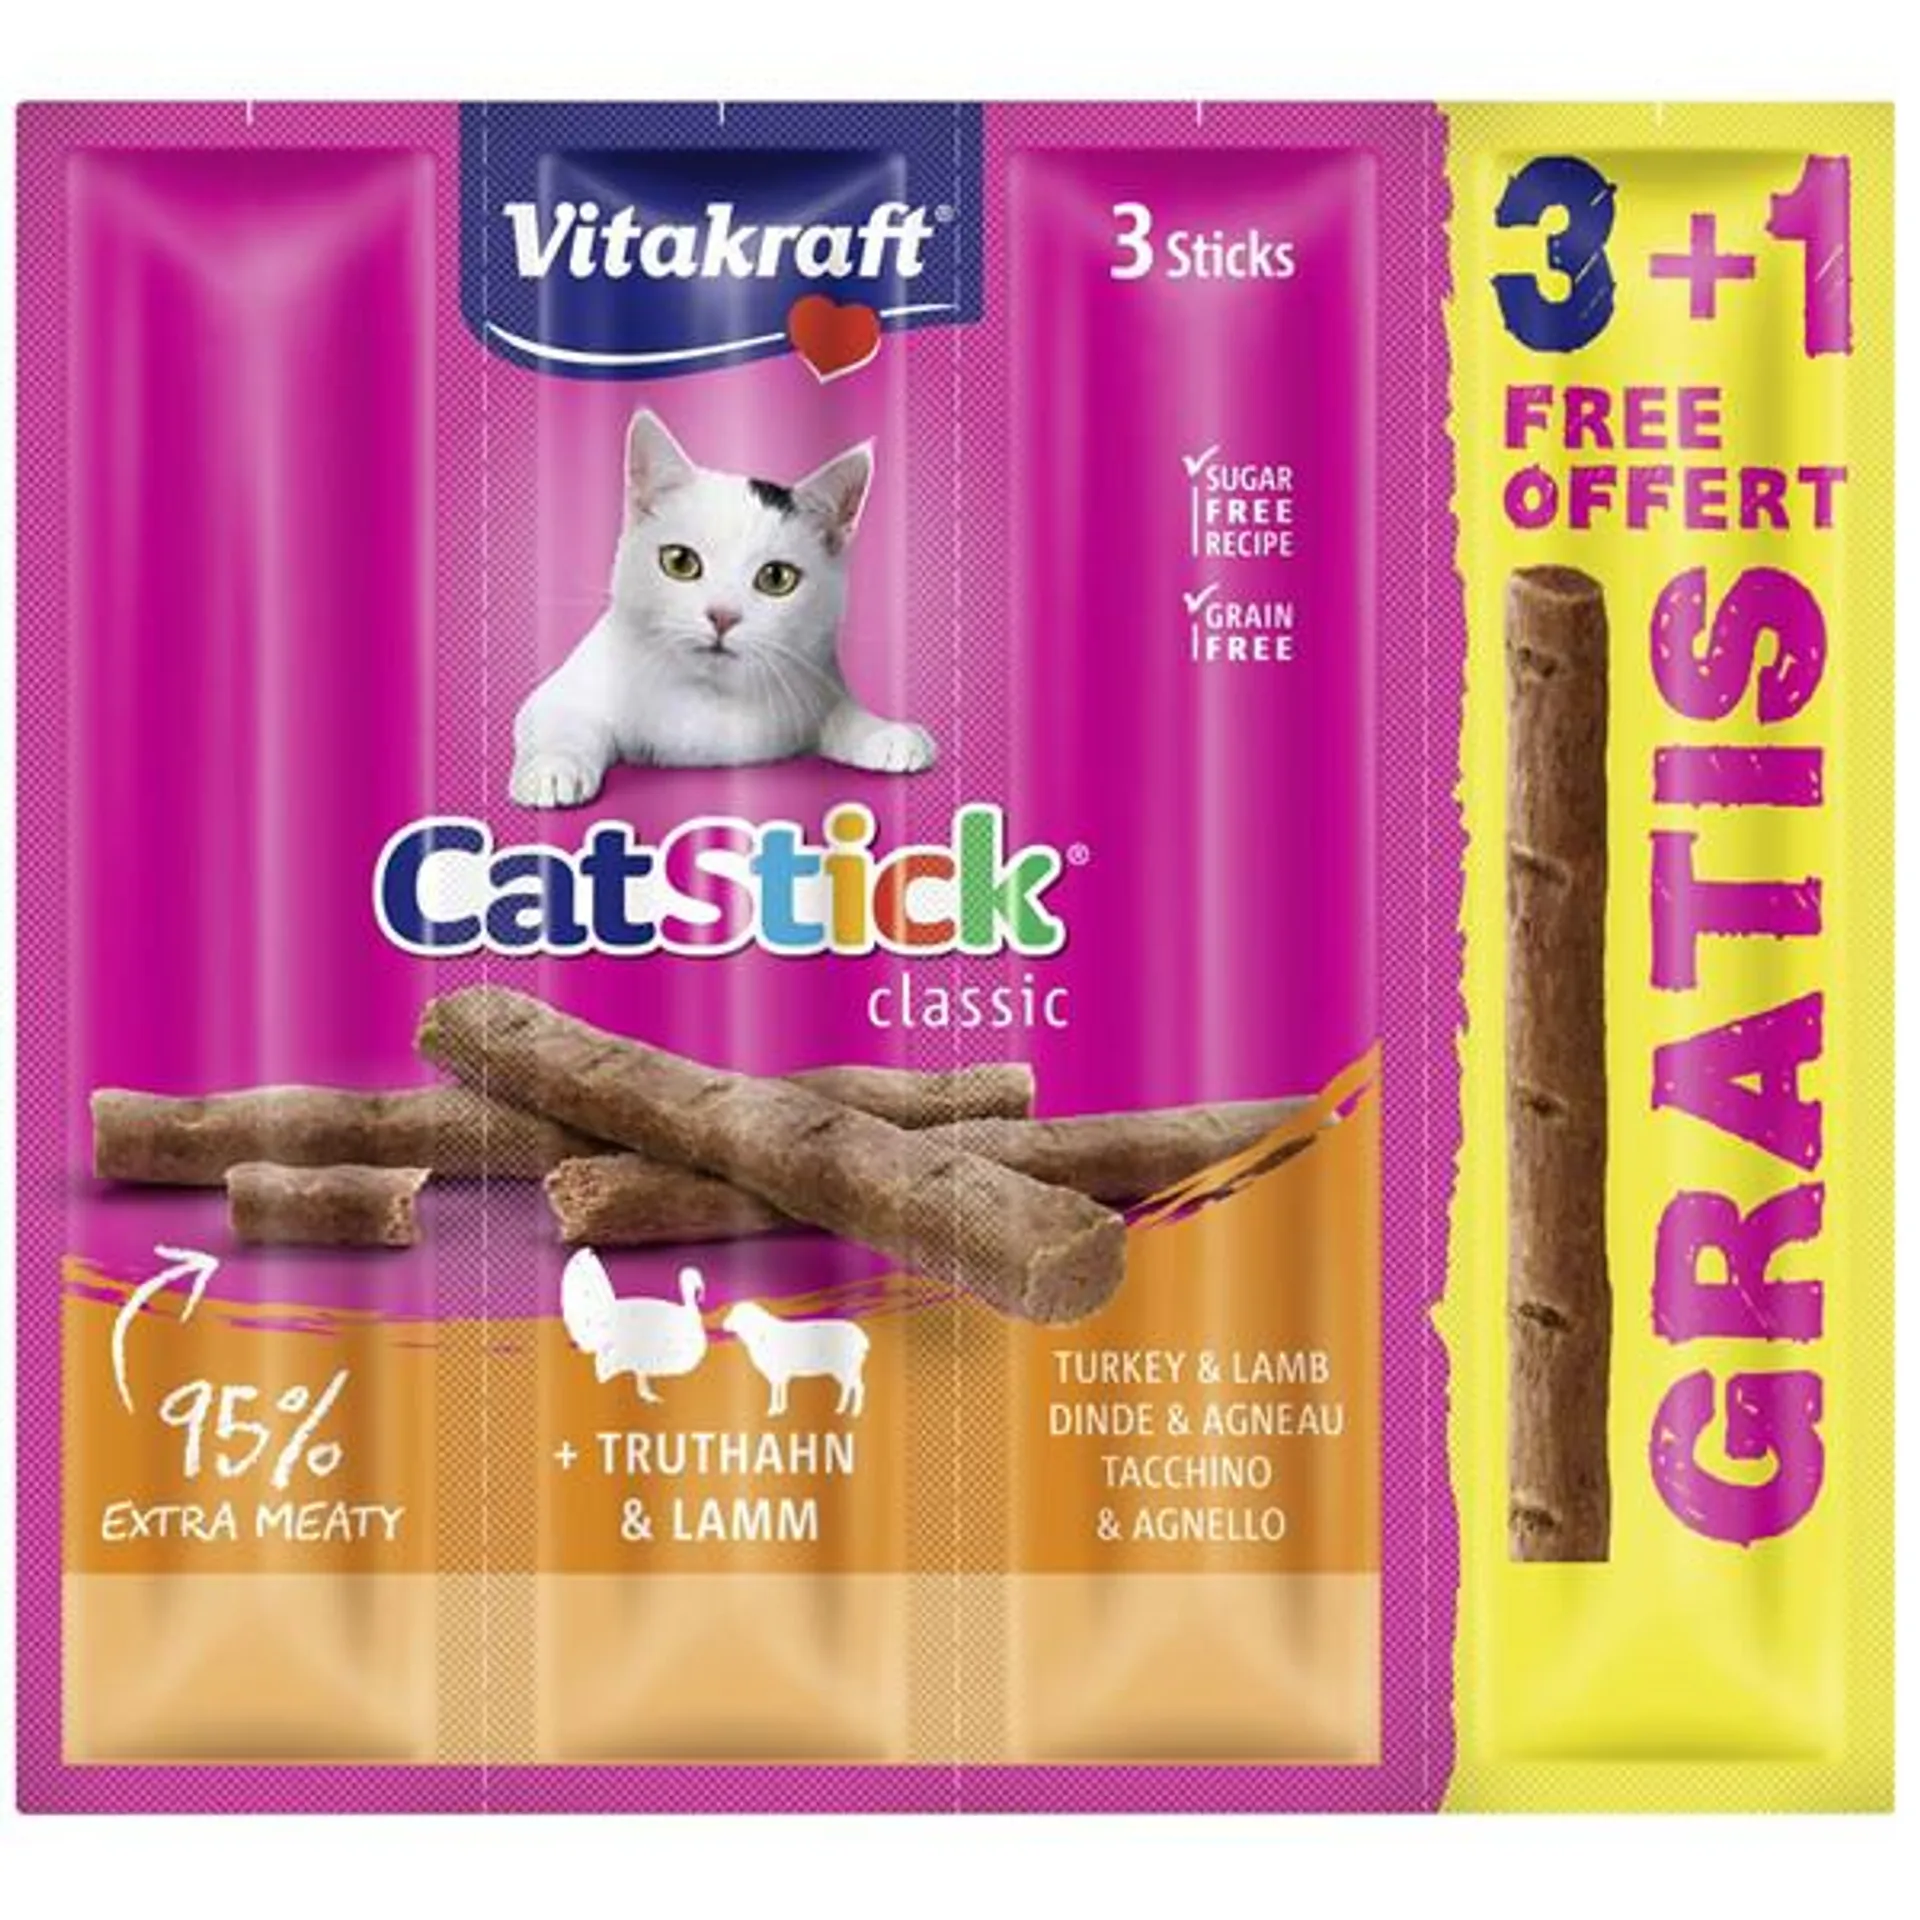 VITAKRAFT Cat Stick Mini, poslastica s puretinom i janjetinom, 24g/3+1 NA DAR